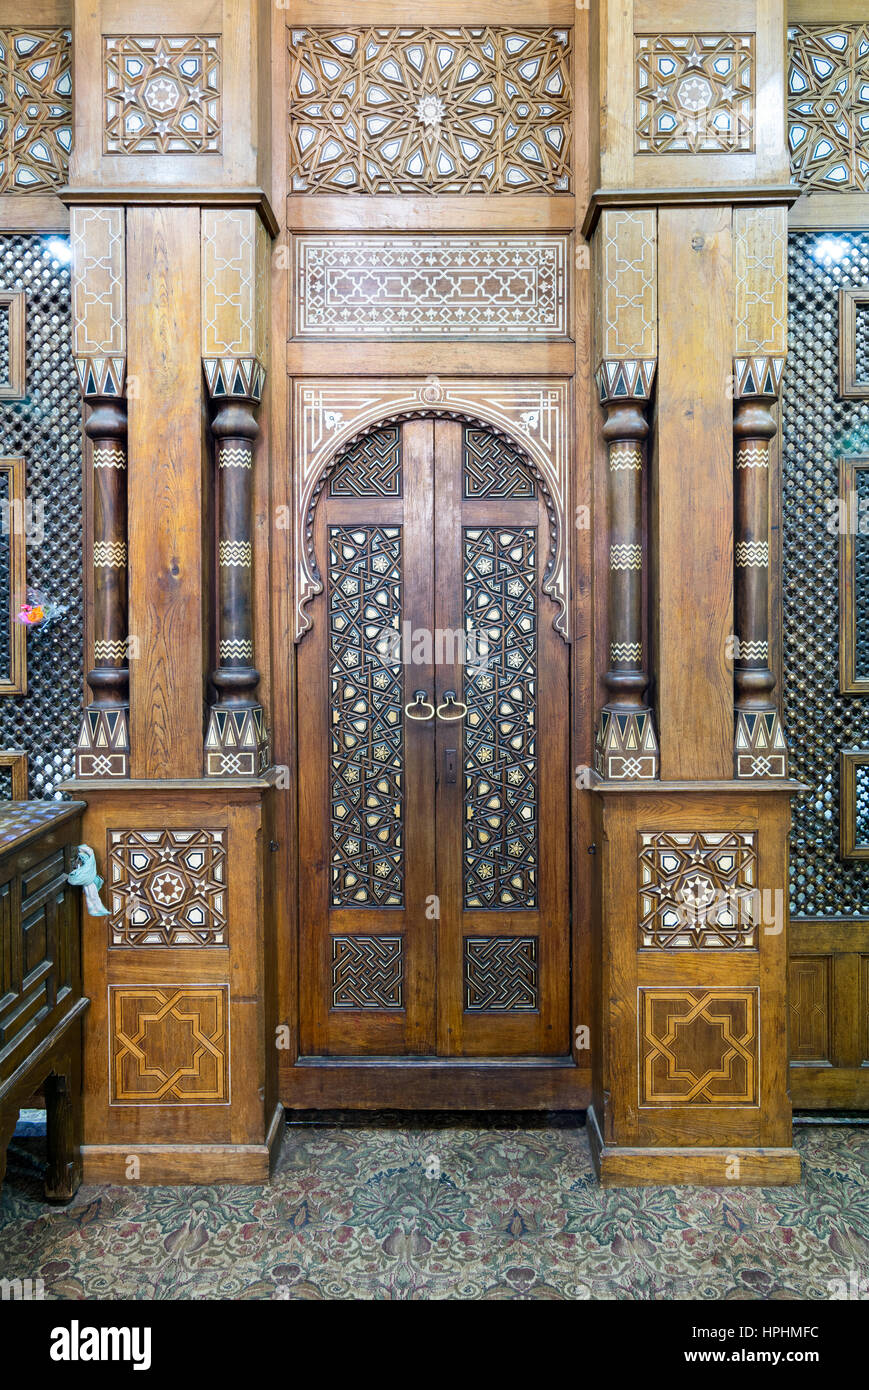 Cairo, Egypt - February 18, 2017: Door of the Shrine of Sheikh Ali Abu El-Shebak, Al-Refai Mosque Stock Photo